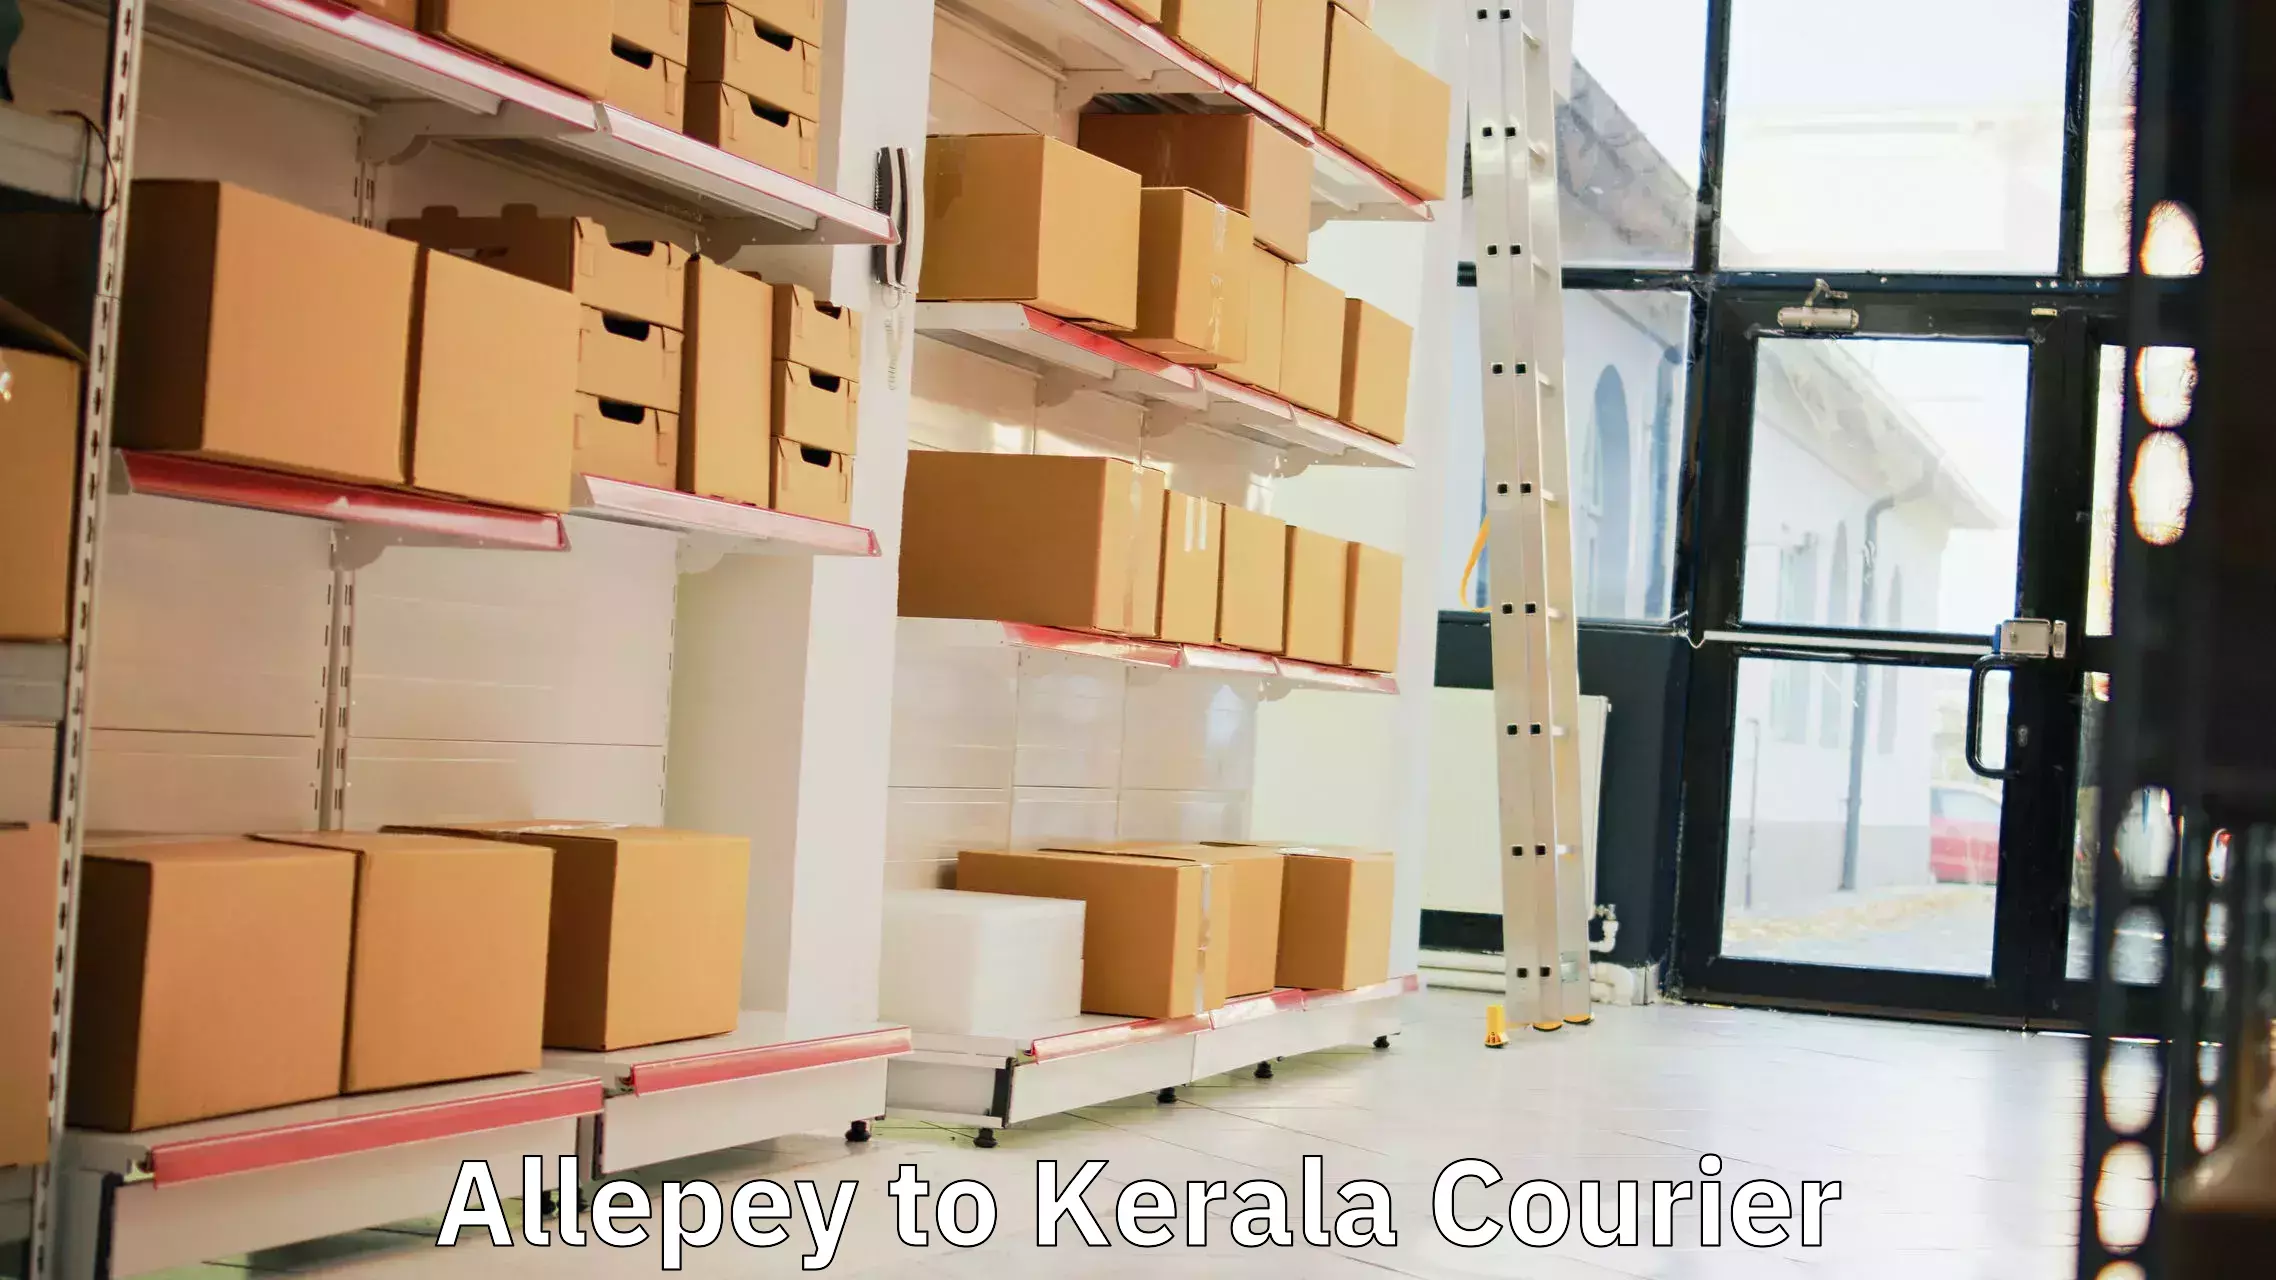 Courier service booking Allepey to Thiruvananthapuram